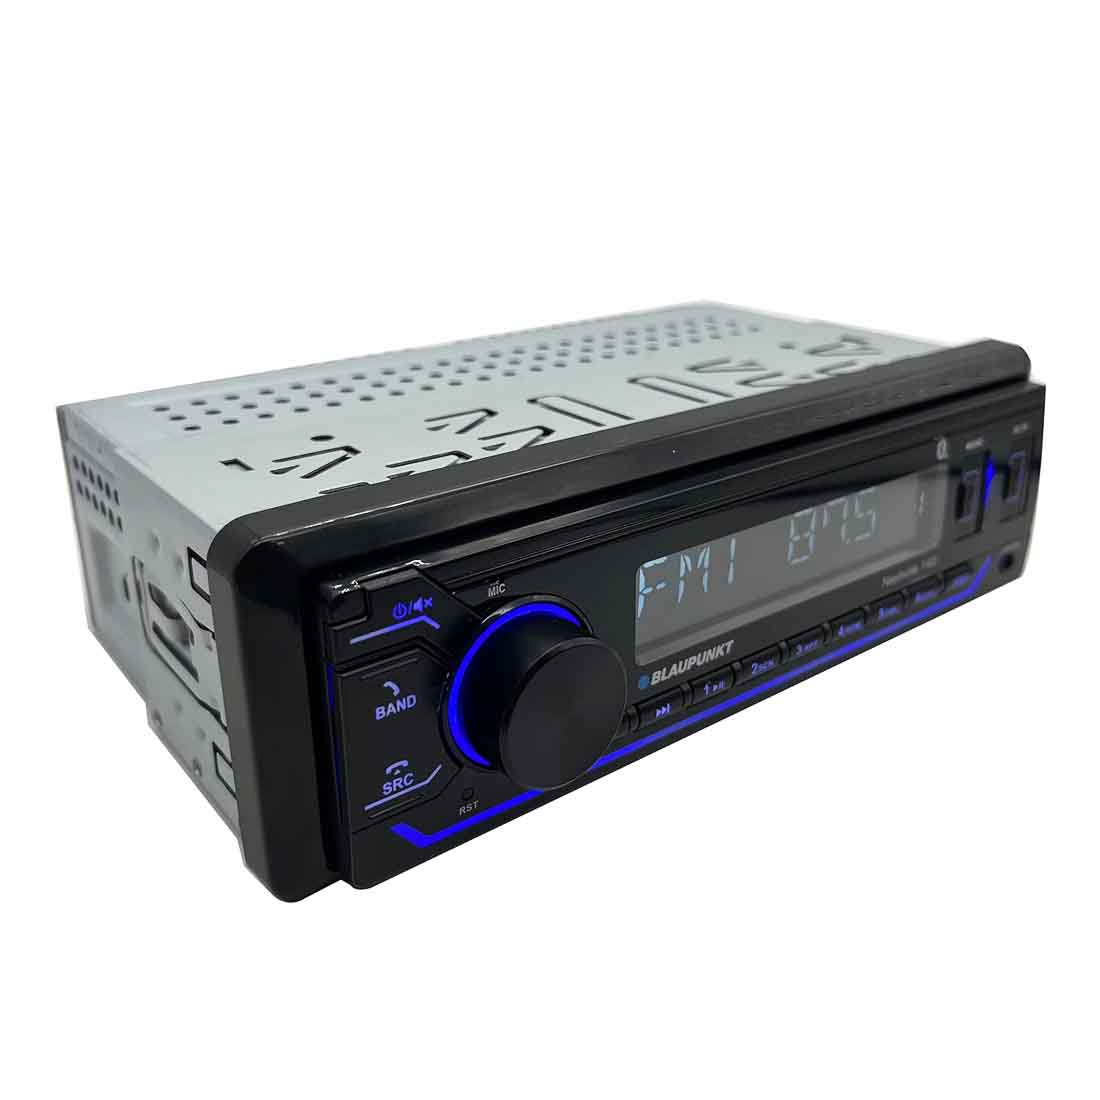 Blaupunkt NASHVILLE 140 1-DIN Bluetooth/USB/MP3 Car Stereo Digital Media Receiver